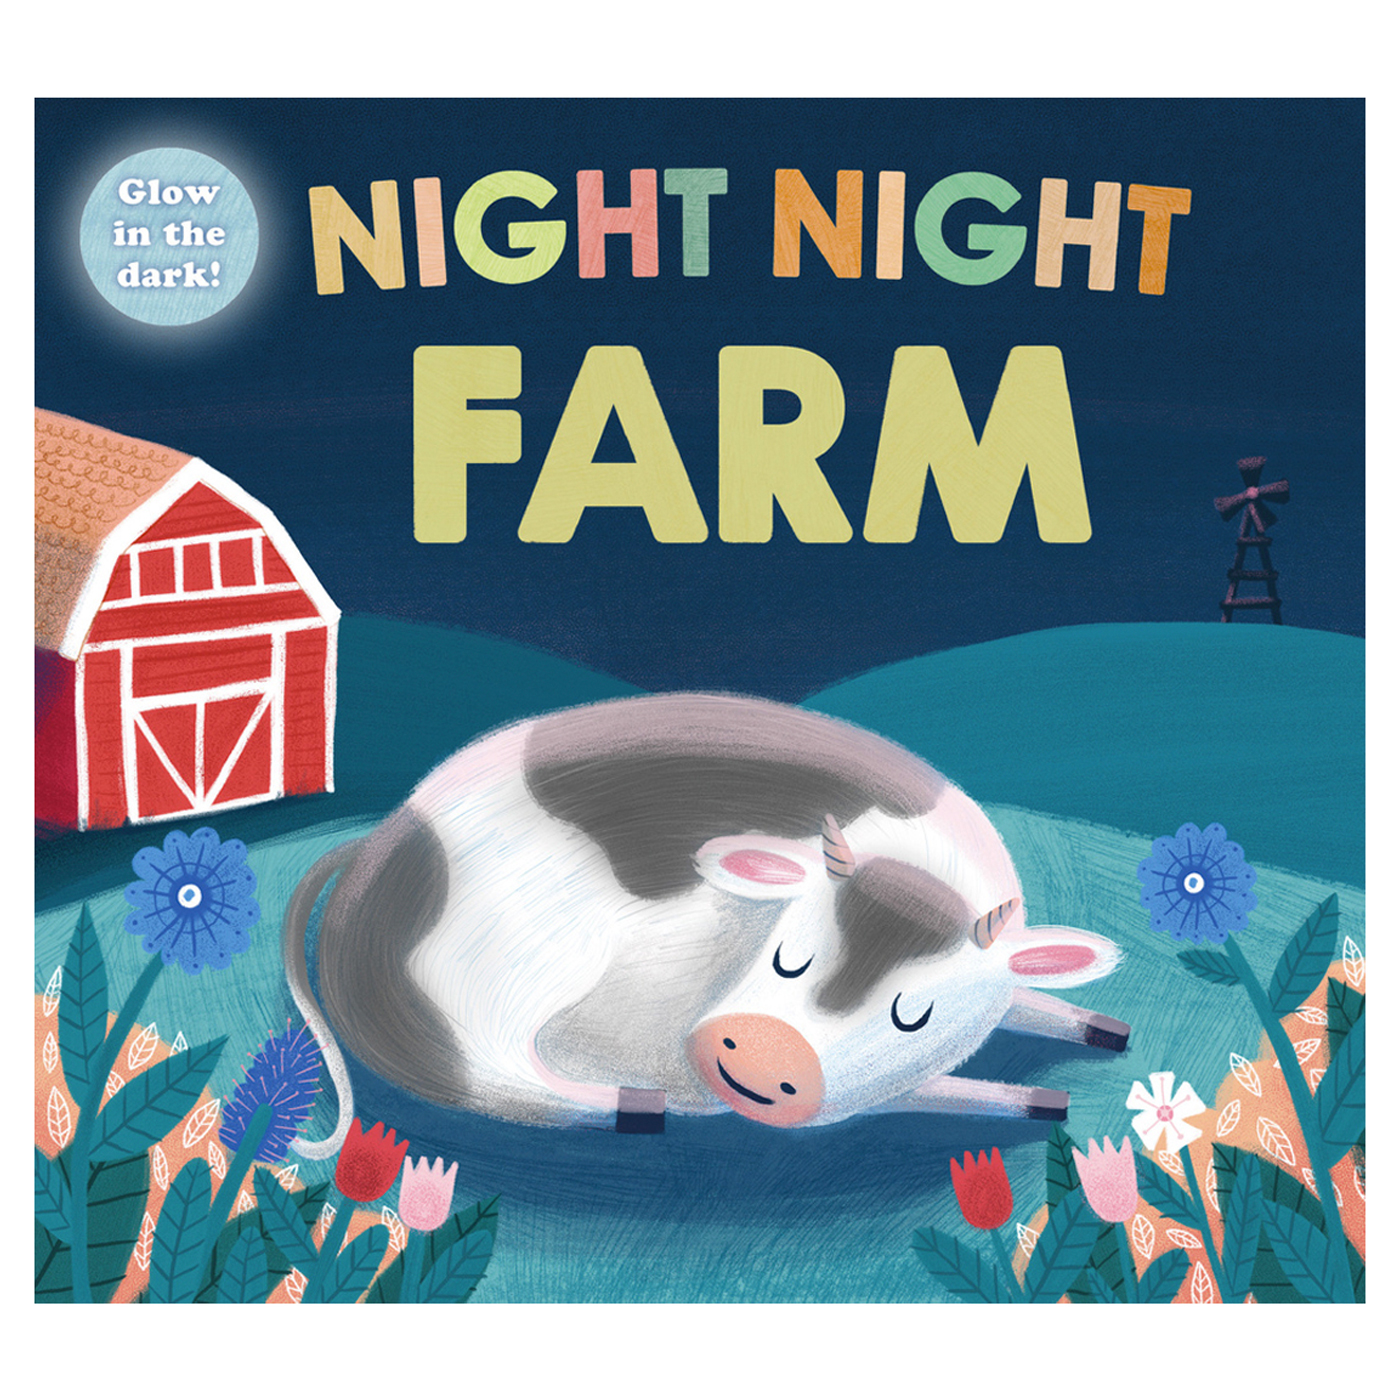  Night Night Farm